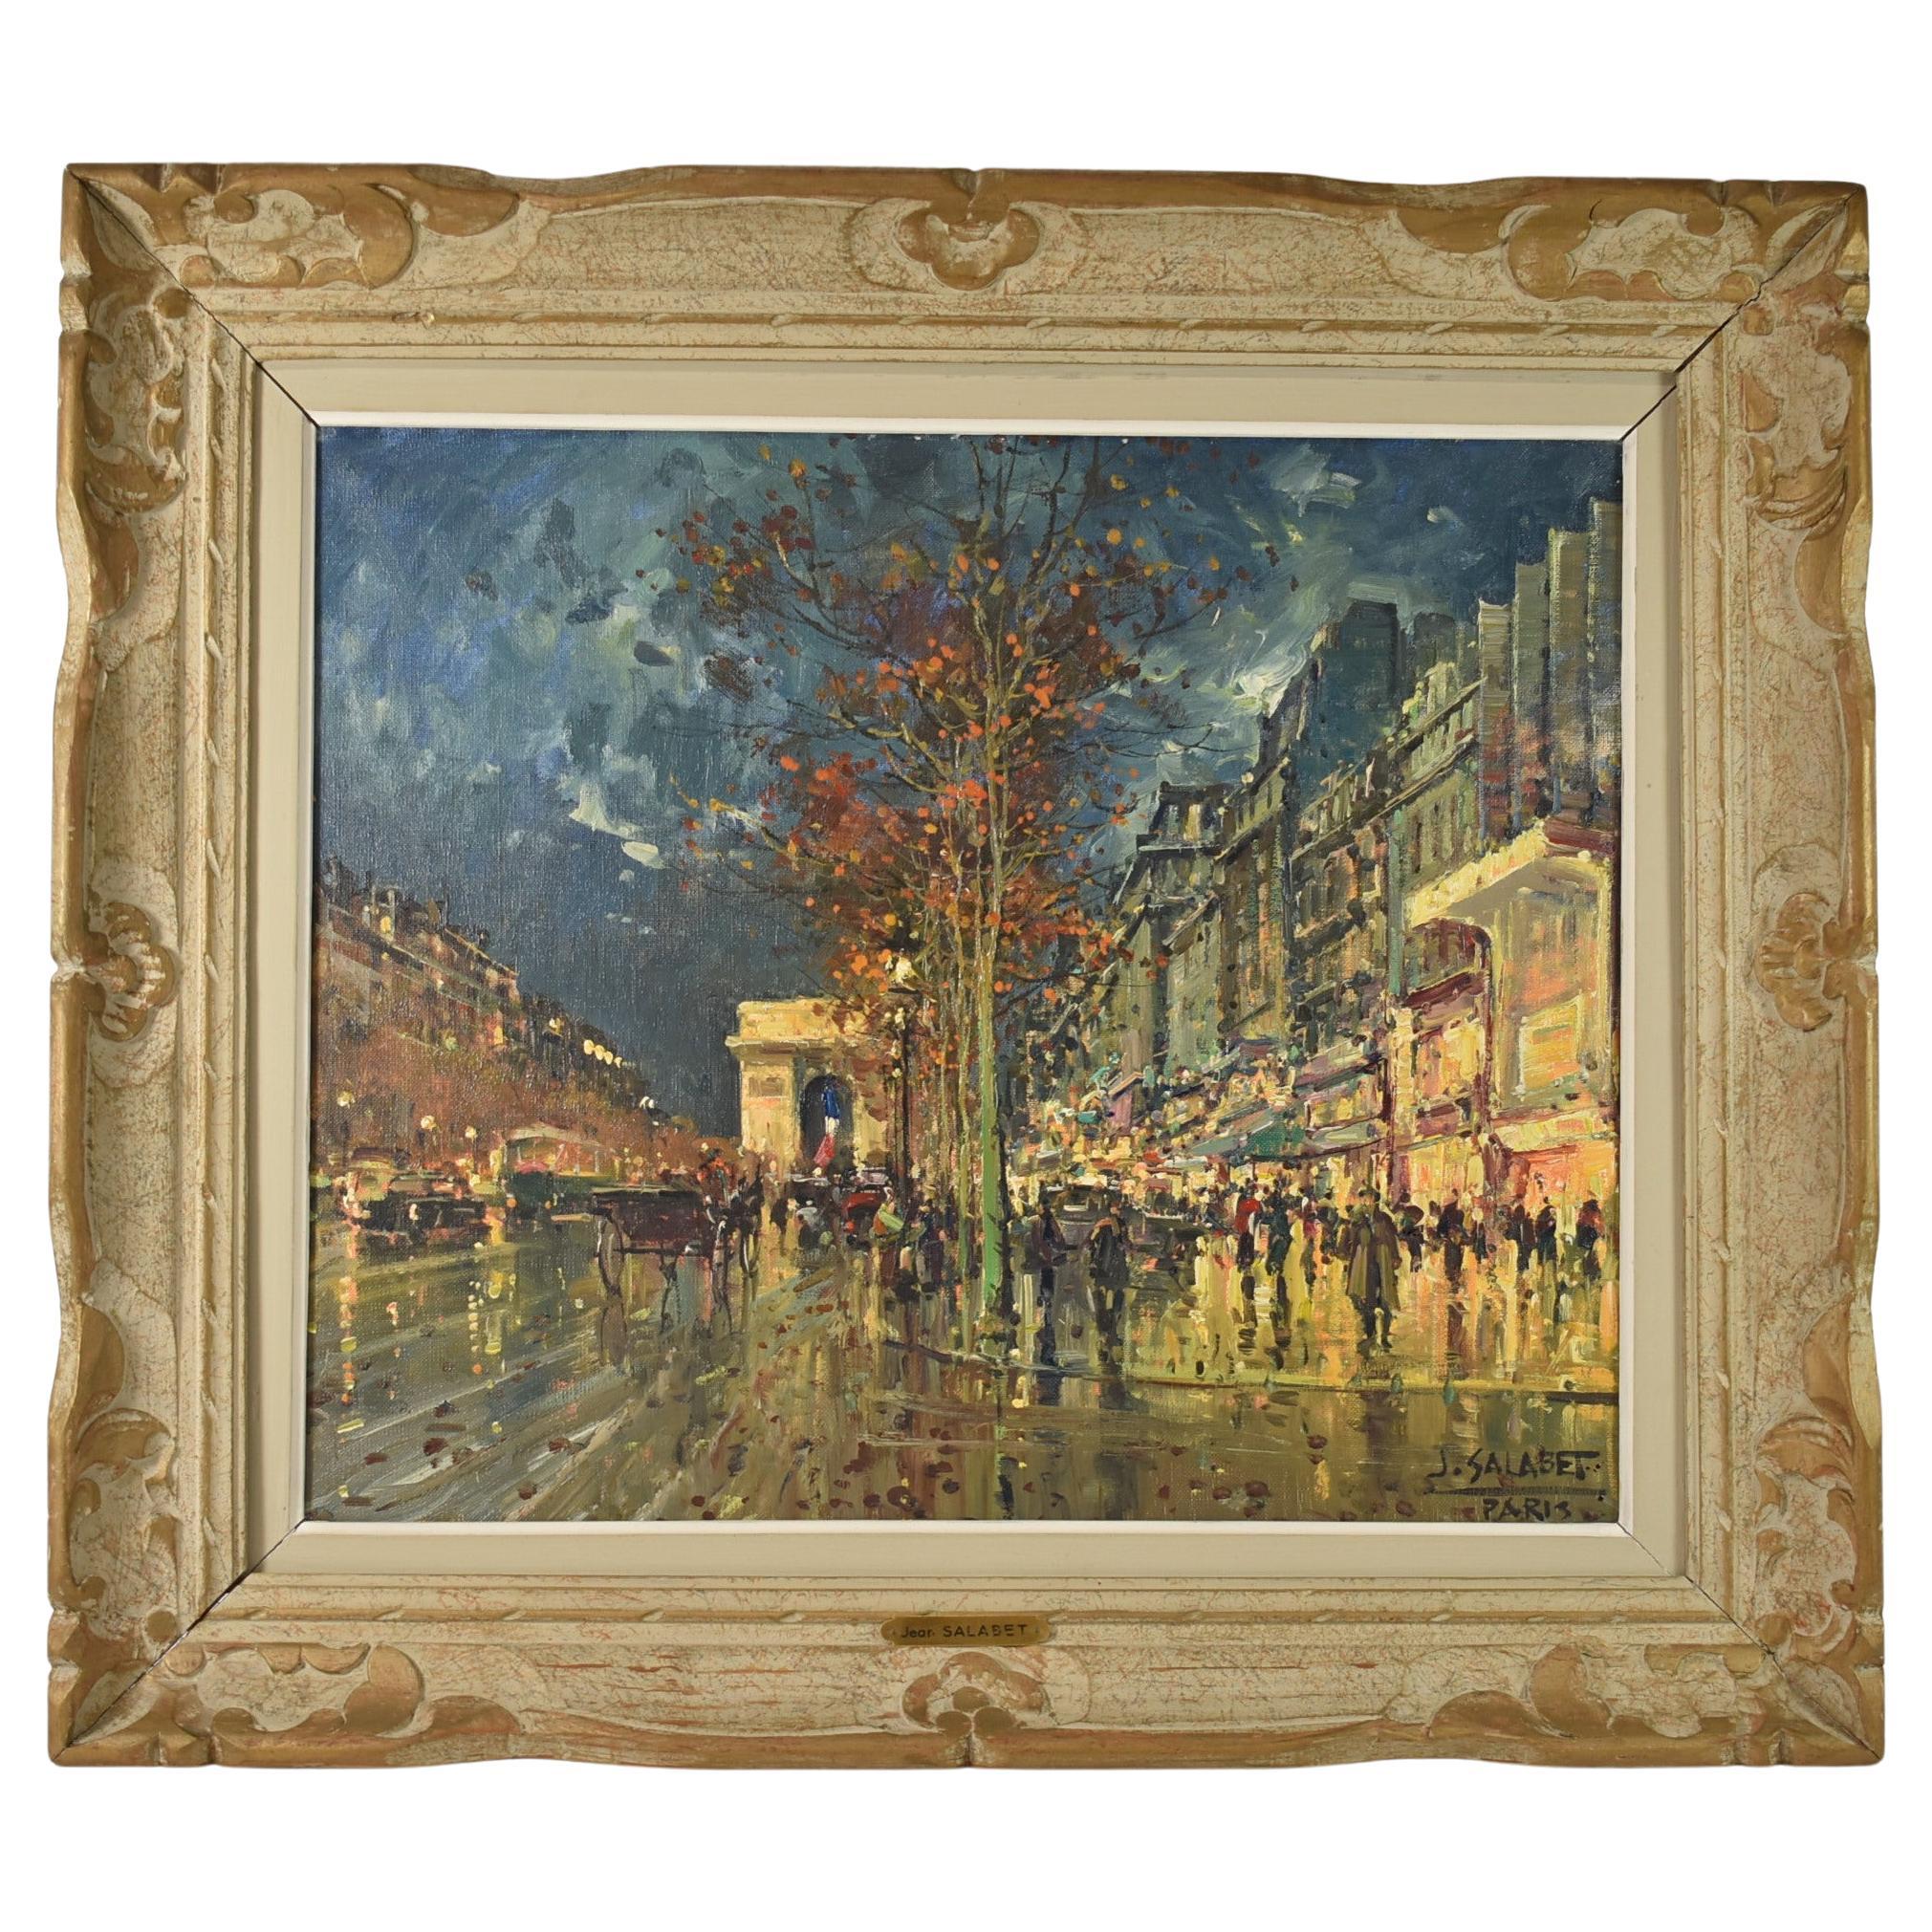 Paris Street Scene Oil Painting on Canvas, Arc De Triumphe, by Jean Salabet